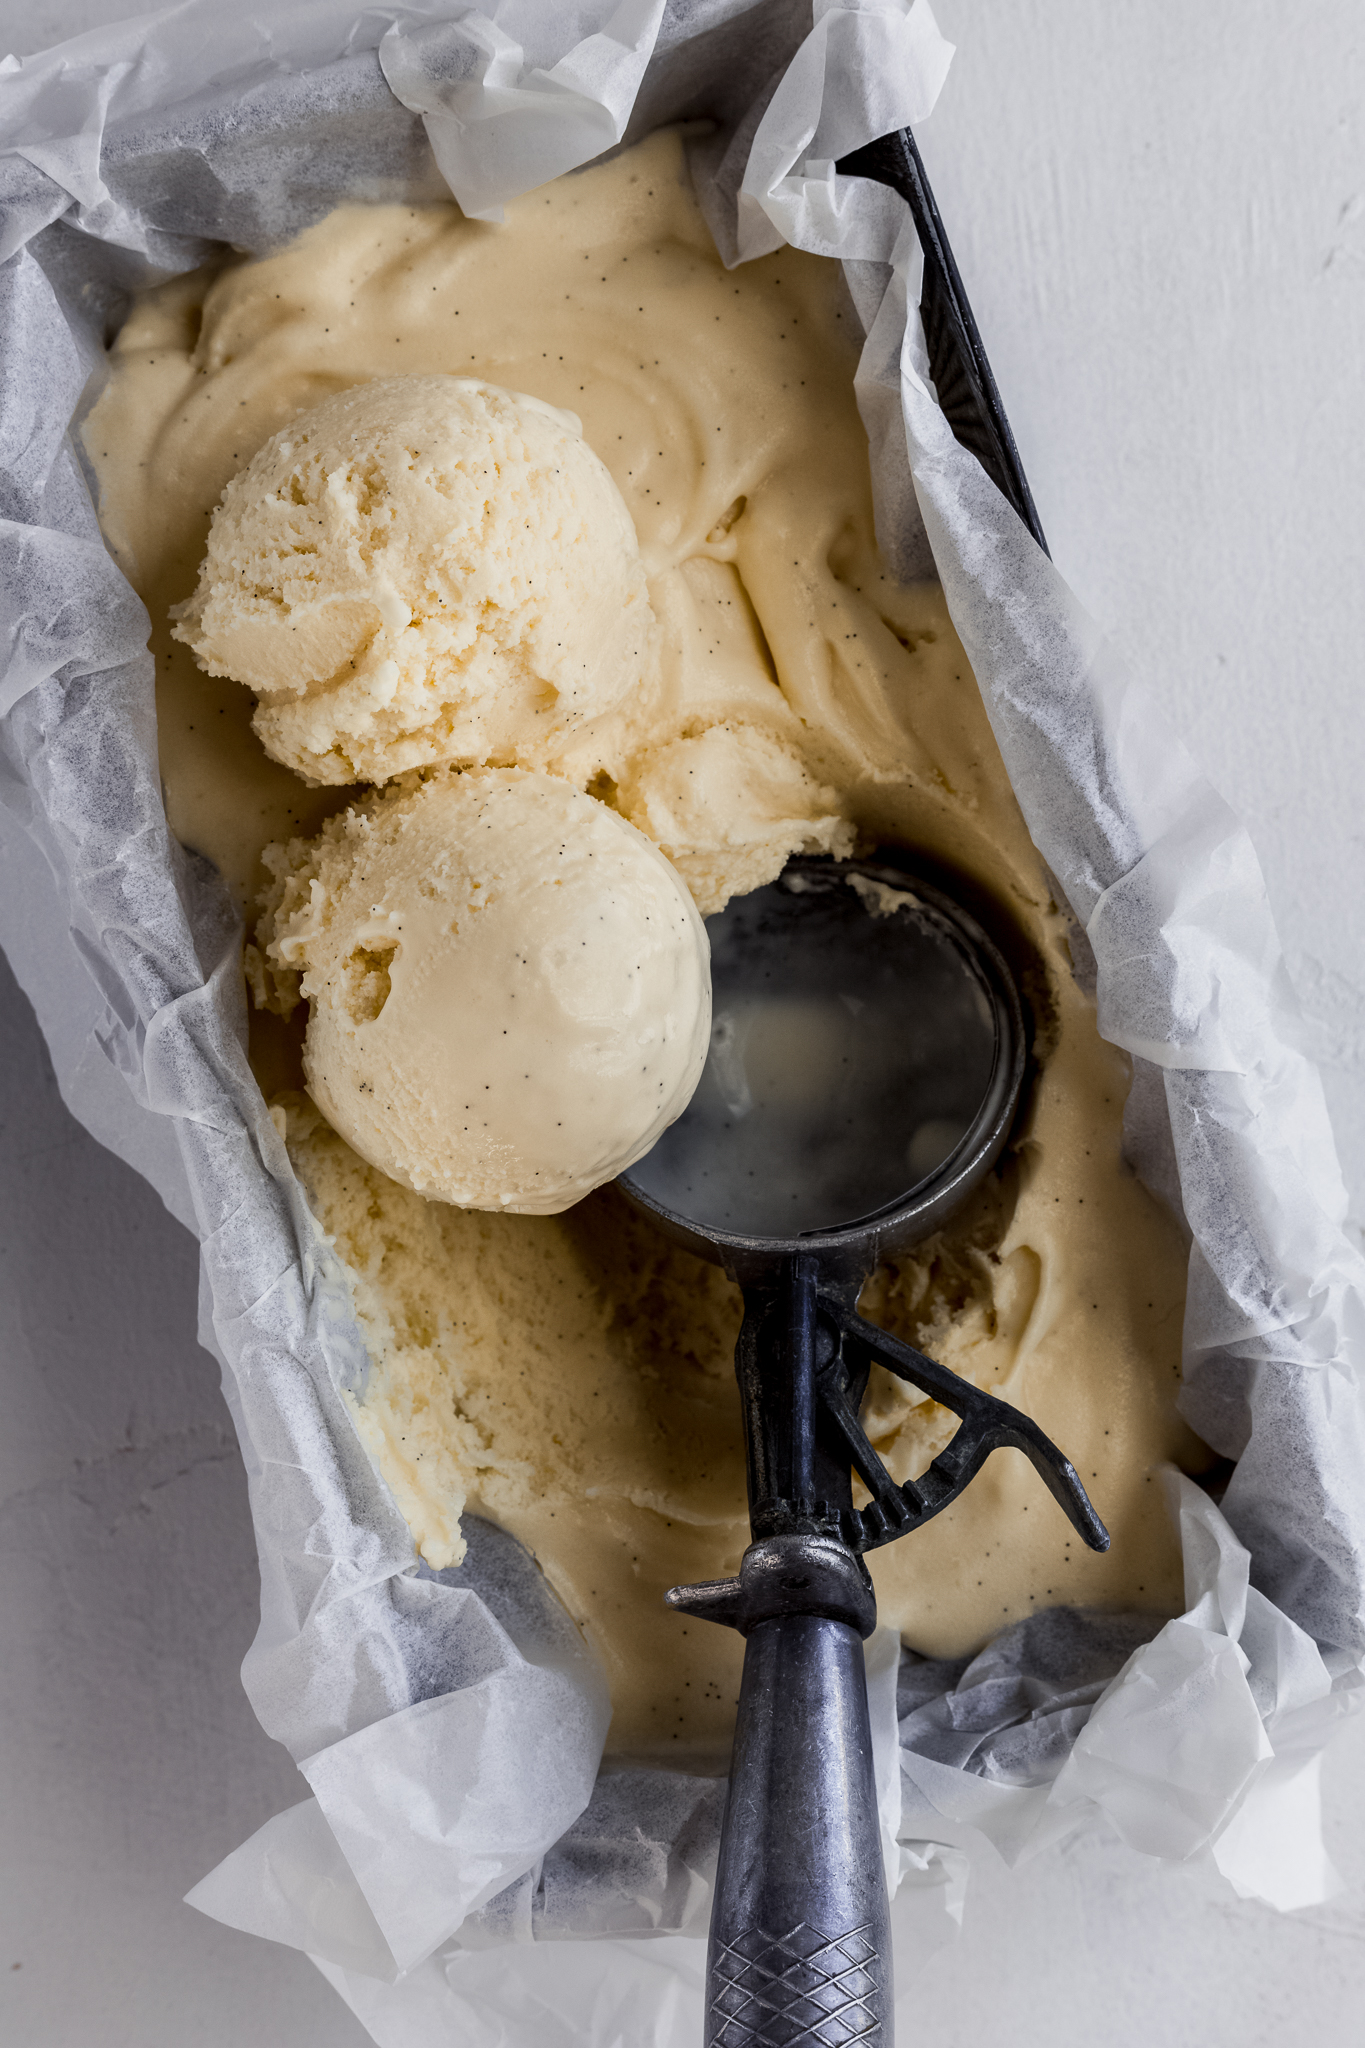 Homemade Vanilla Ice Cream Recipe - Love and Lemons